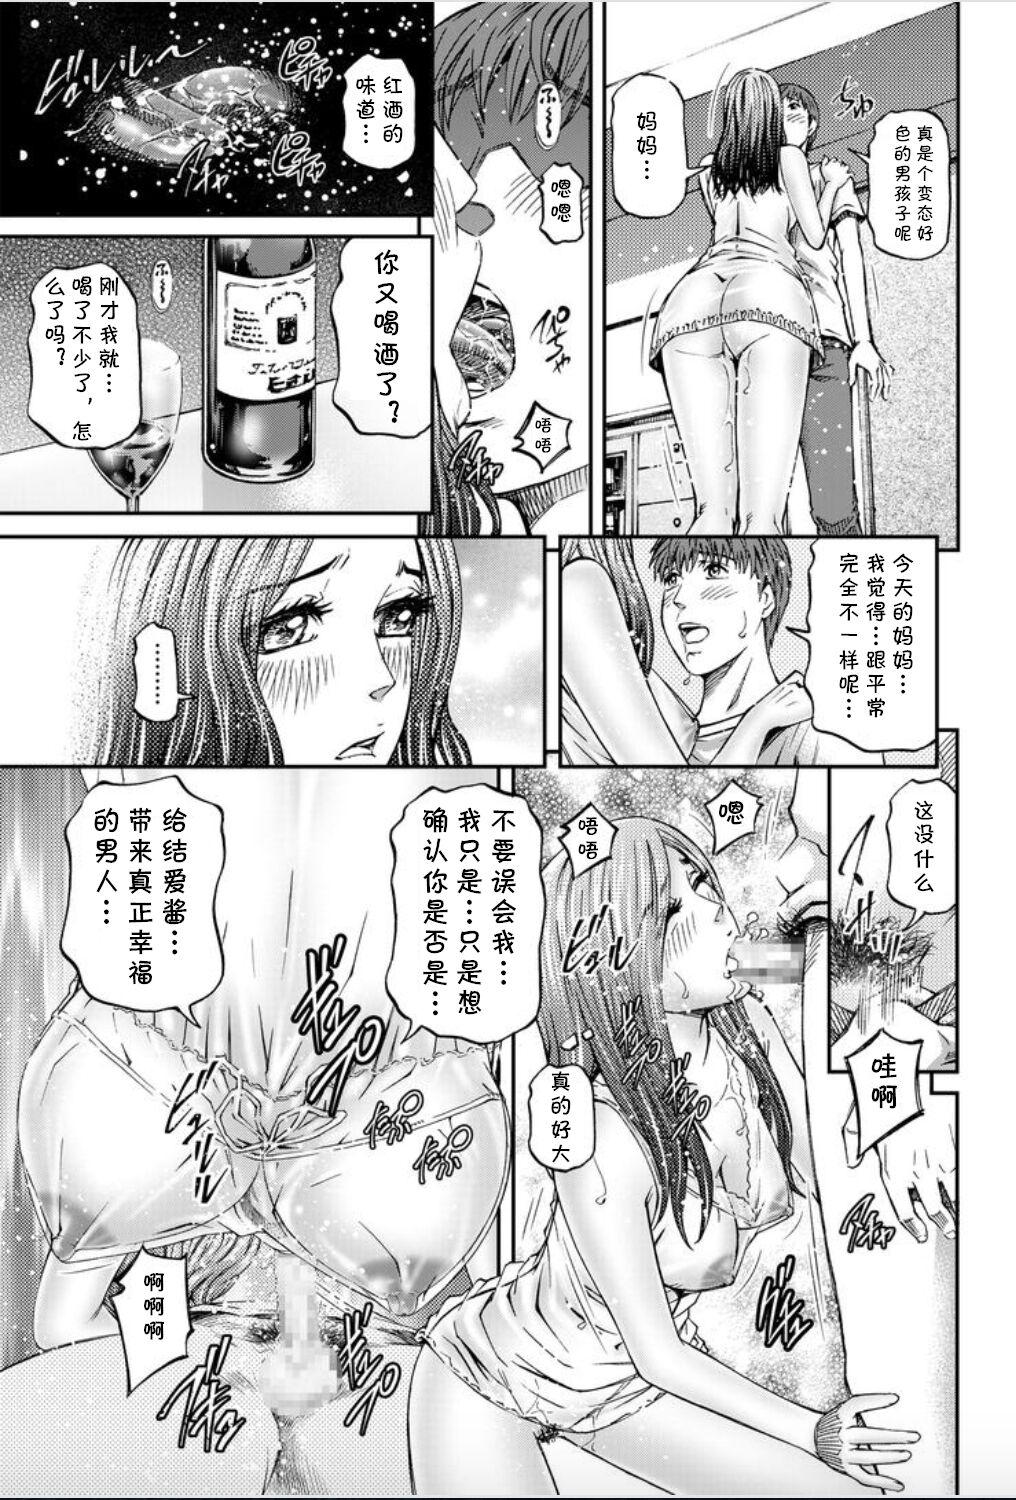 Stretching Onna-tachi ga Iku Toki... Ero Drama Vol. 8 Datte, Kanojo no Haha ga... Oral - Page 9